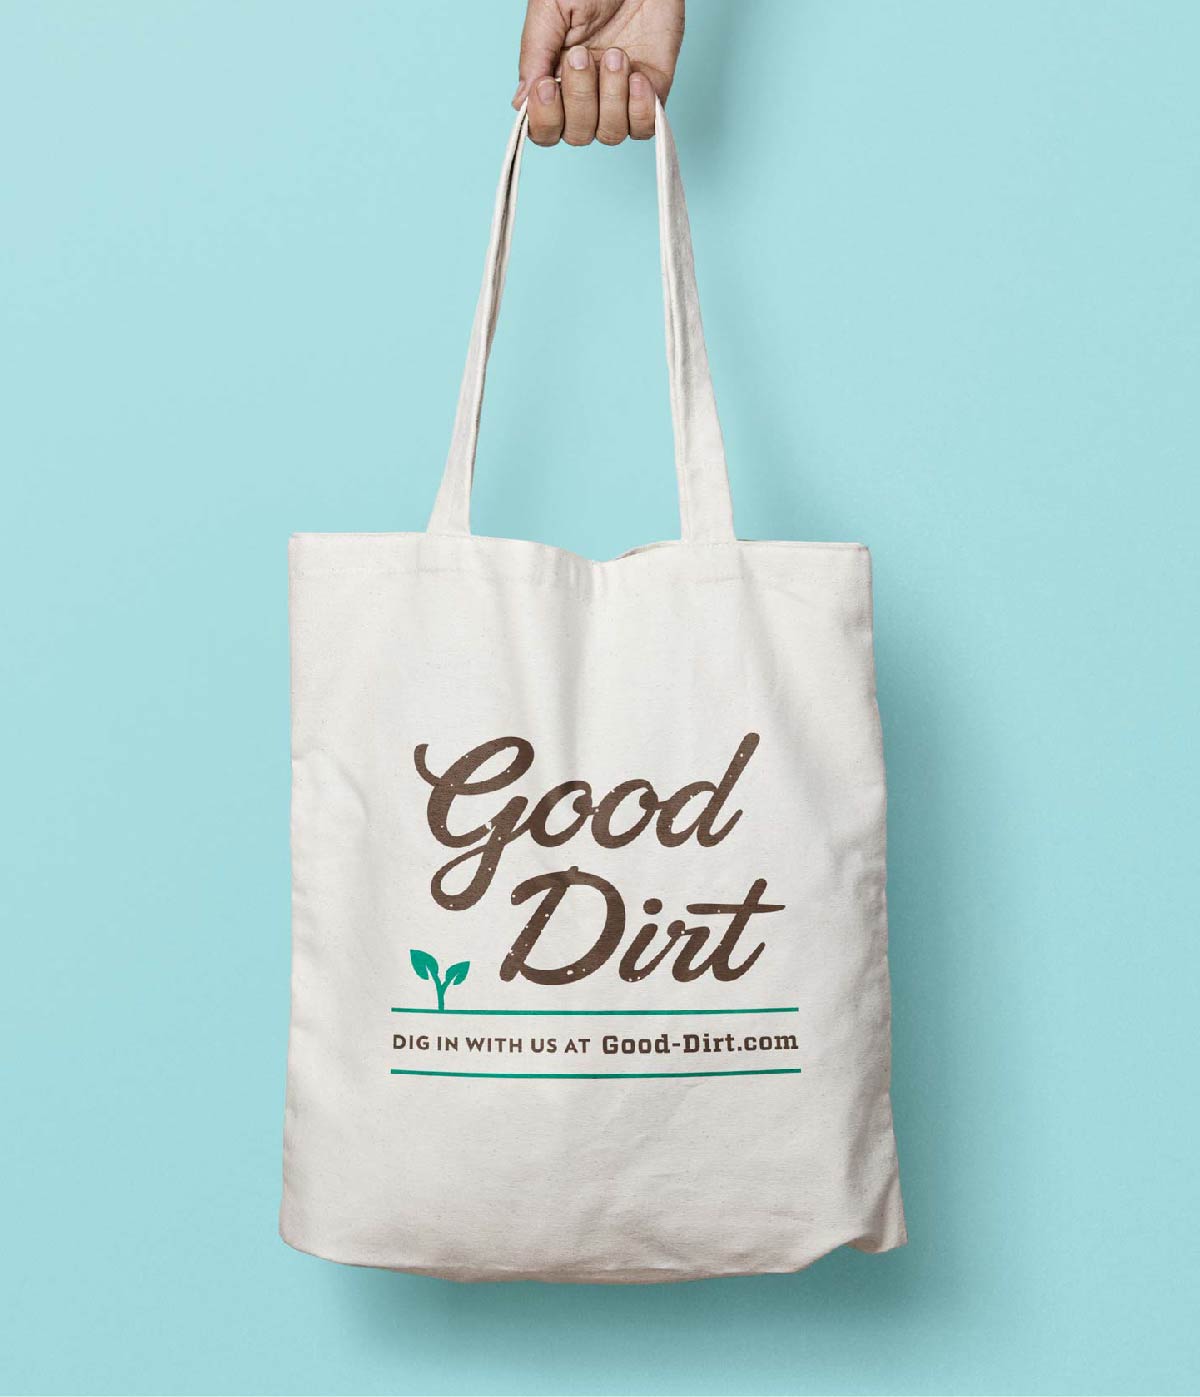 Good Dirt Tote Bag Design